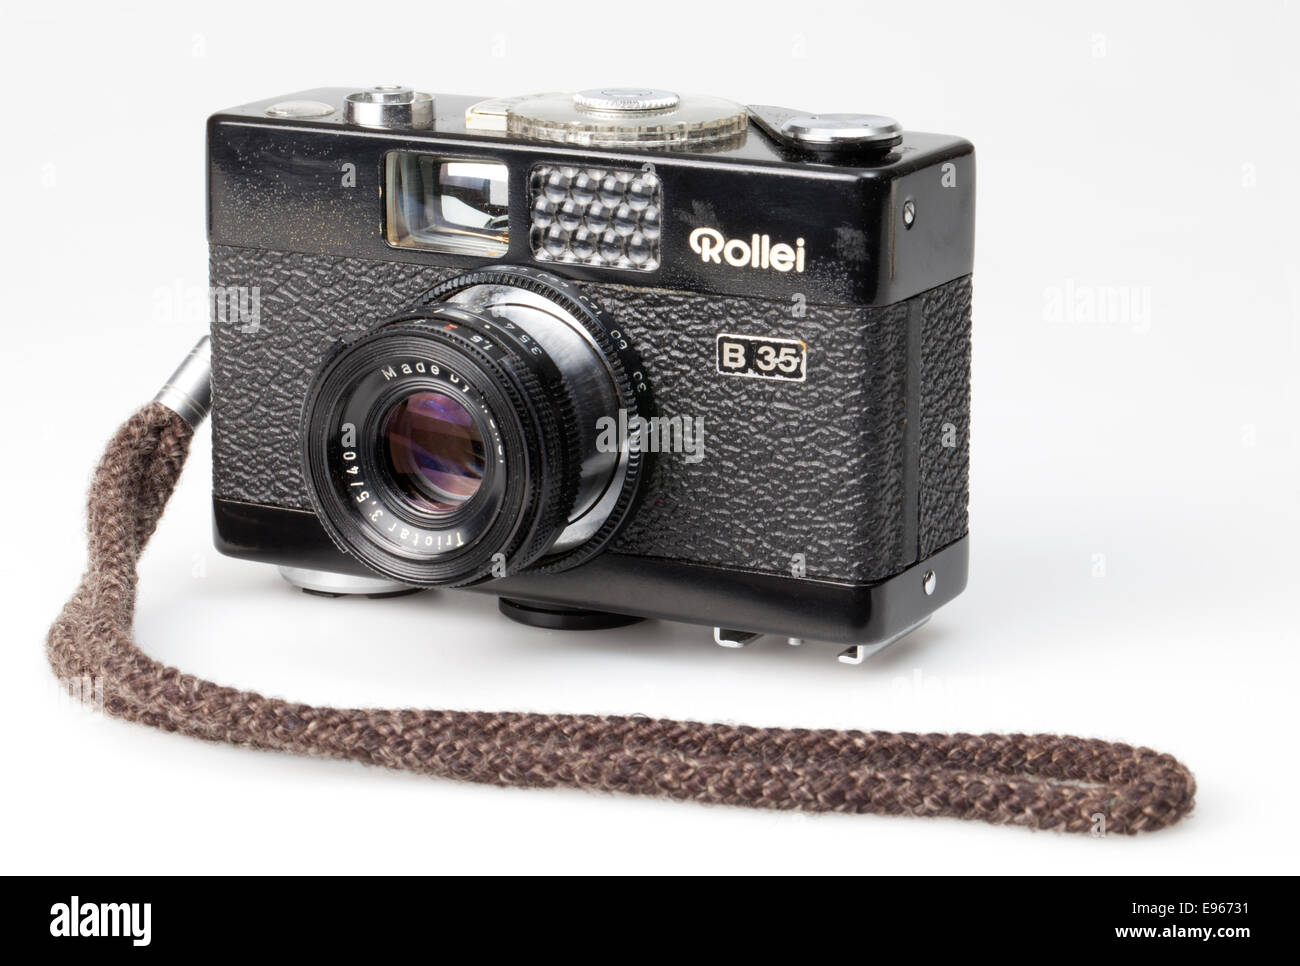 Analogico 35mm fotocamera a pellicola, Rollei B 35, Foto Stock